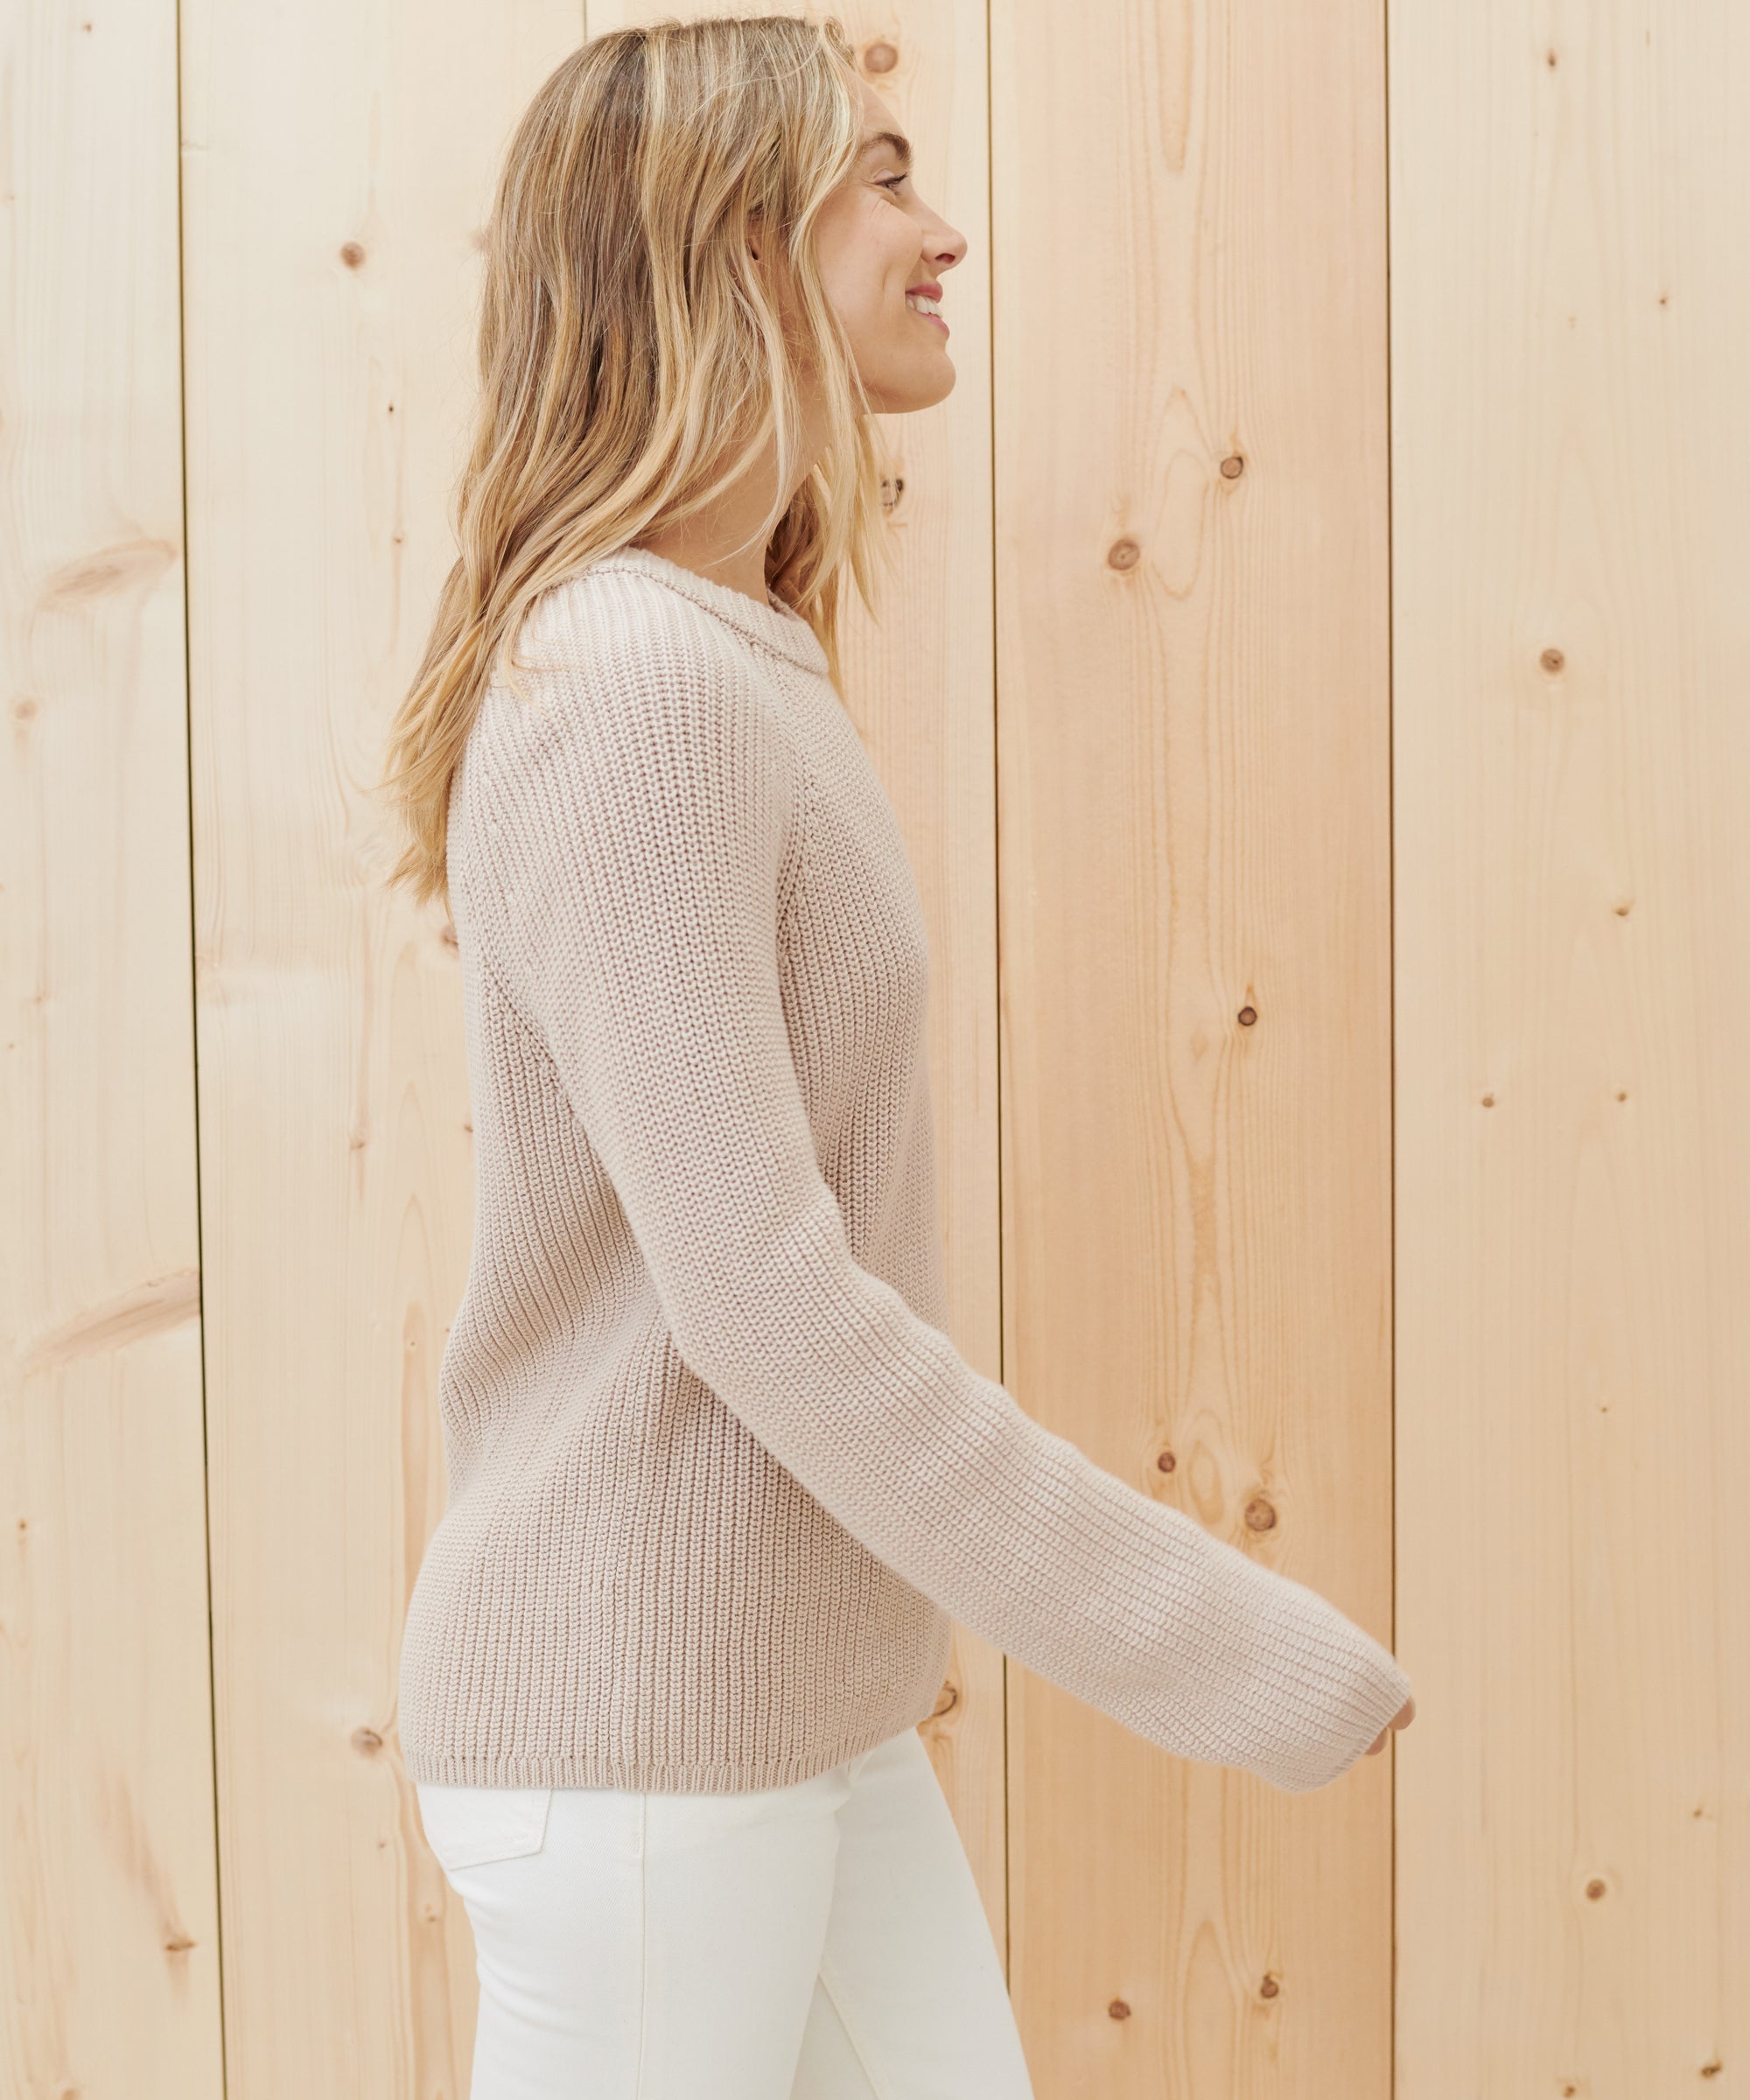 Jenni Kayne Women's Cotton Fisherman Sweater Size 1x